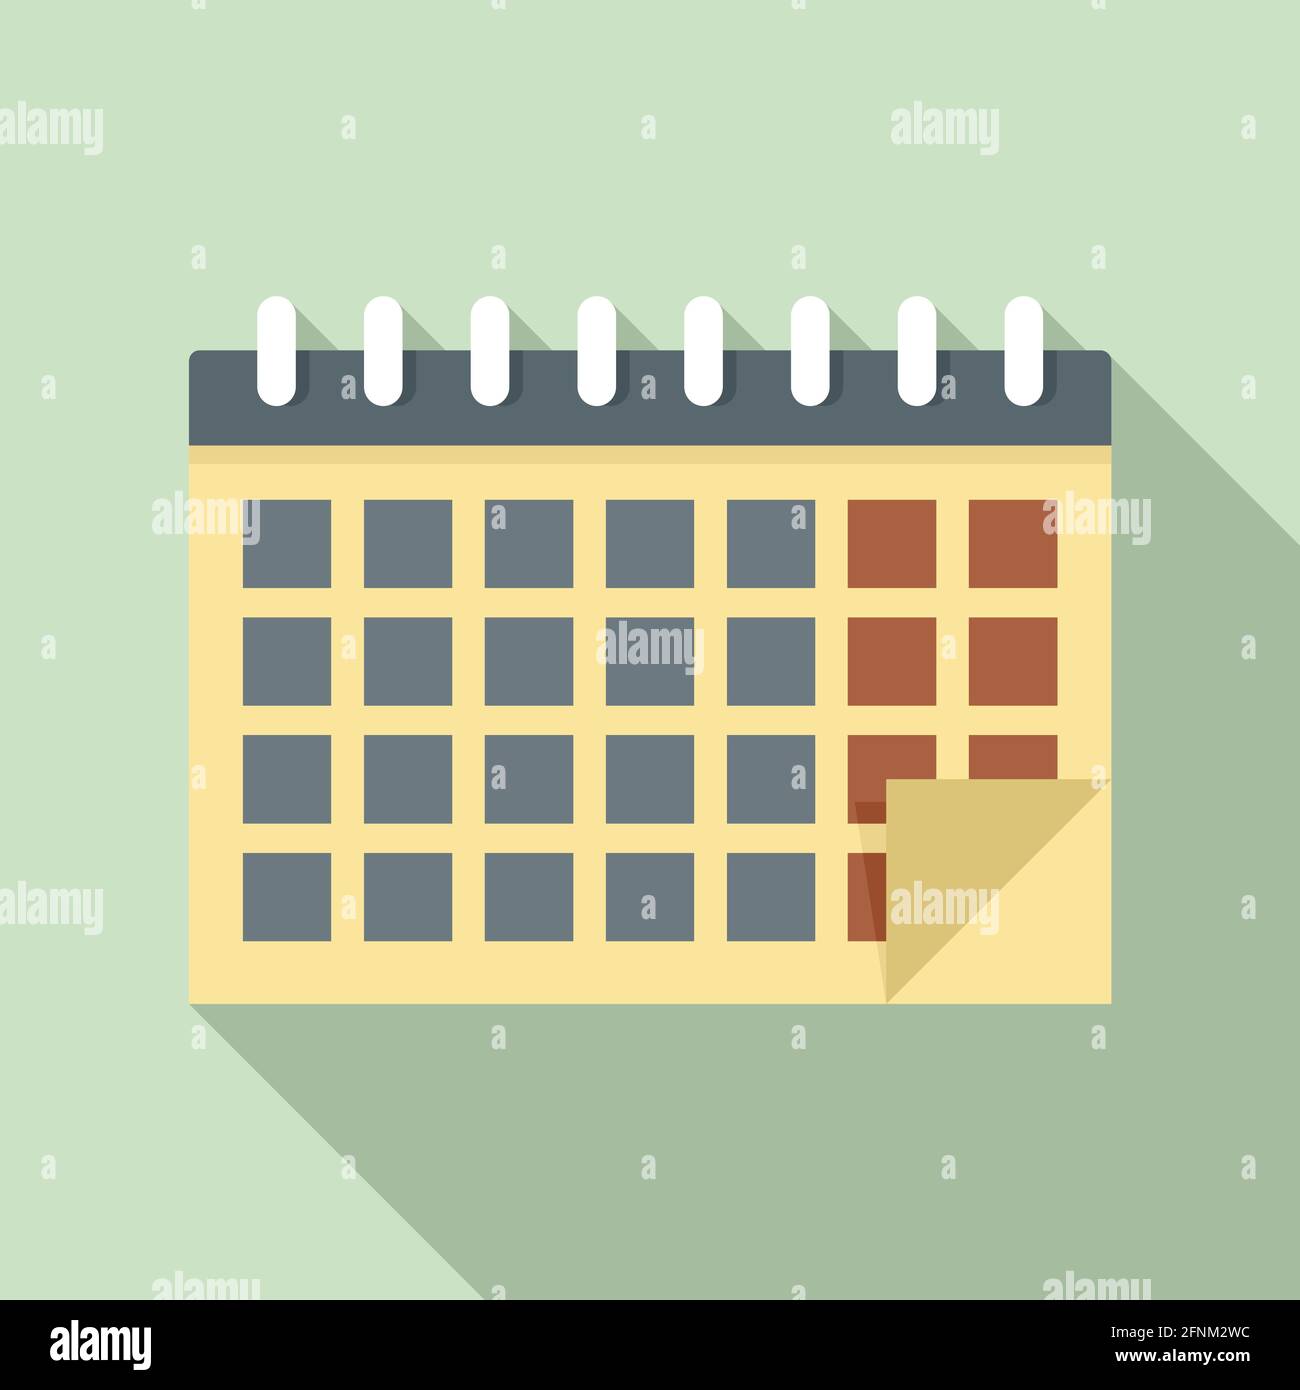 Syllabus calendar icon, flat style Stock Vector